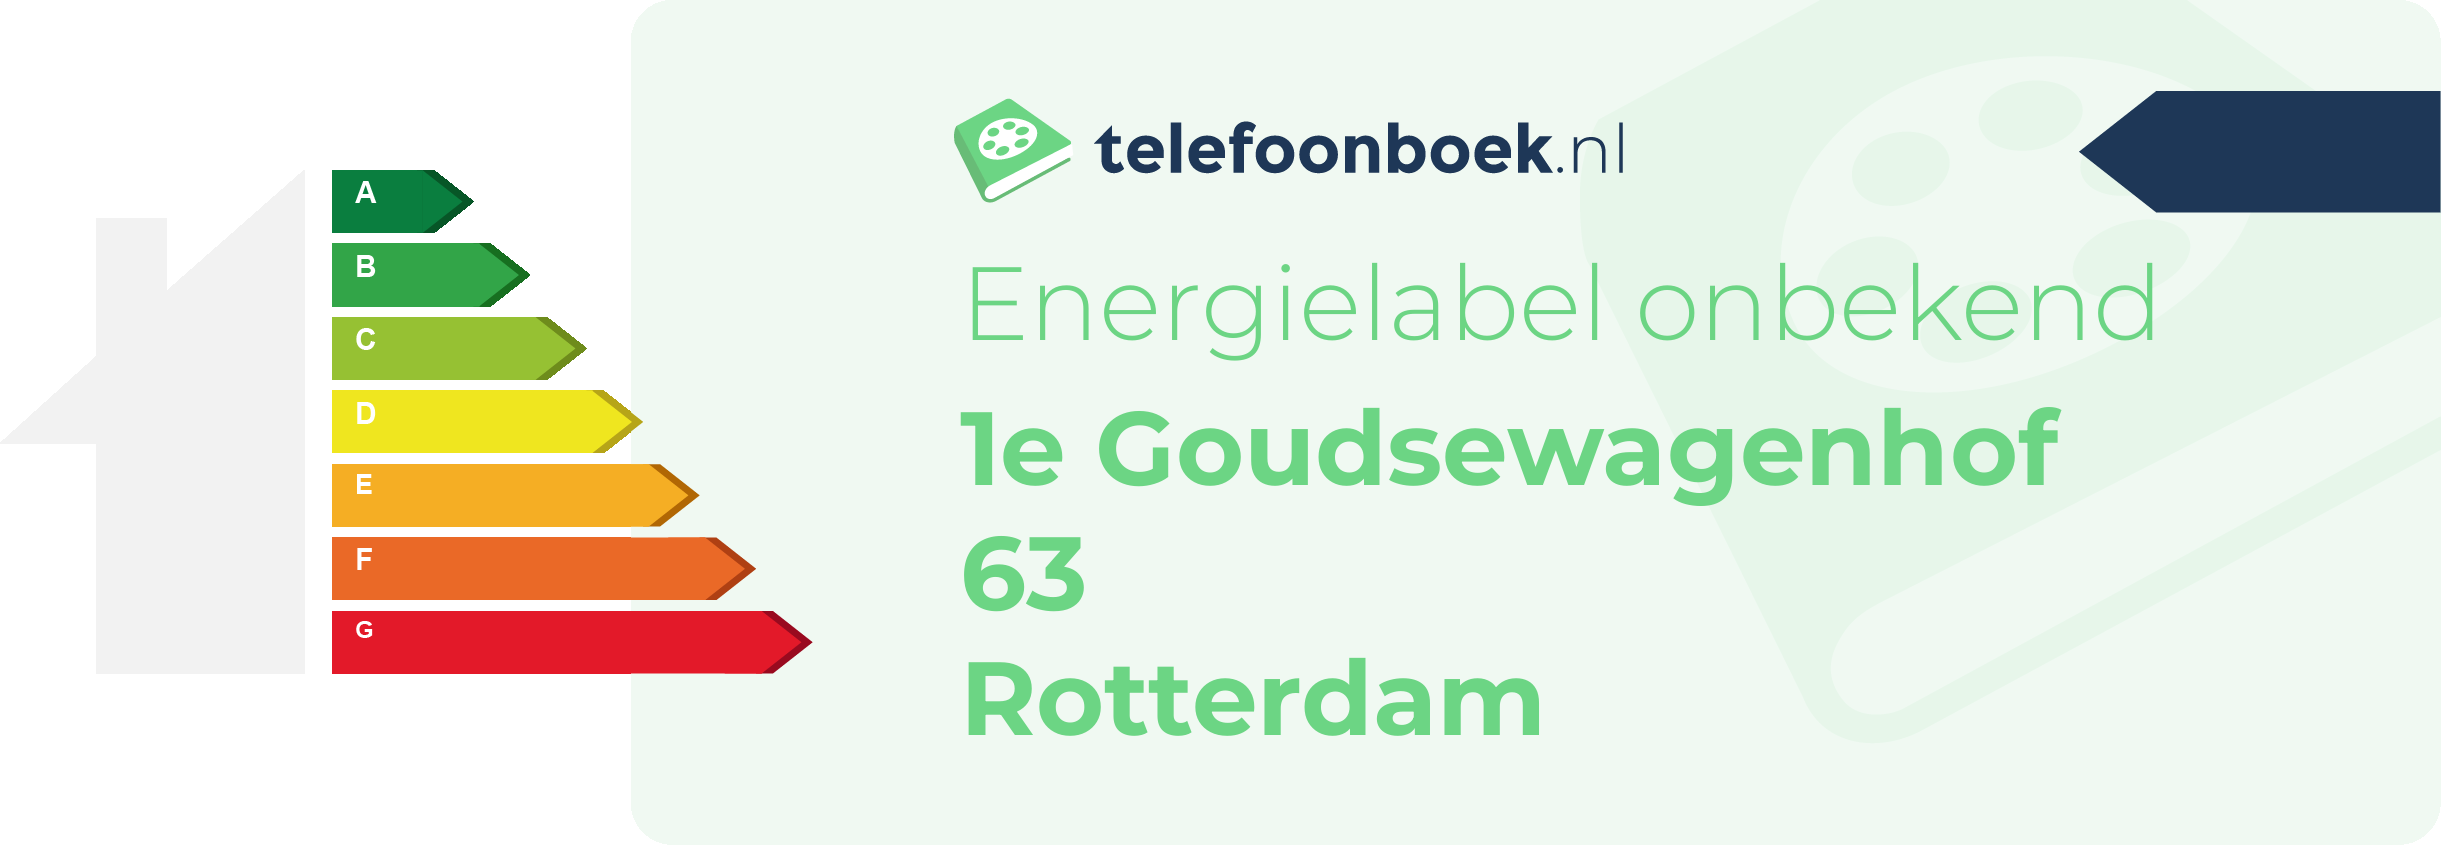 Energielabel 1e Goudsewagenhof 63 Rotterdam